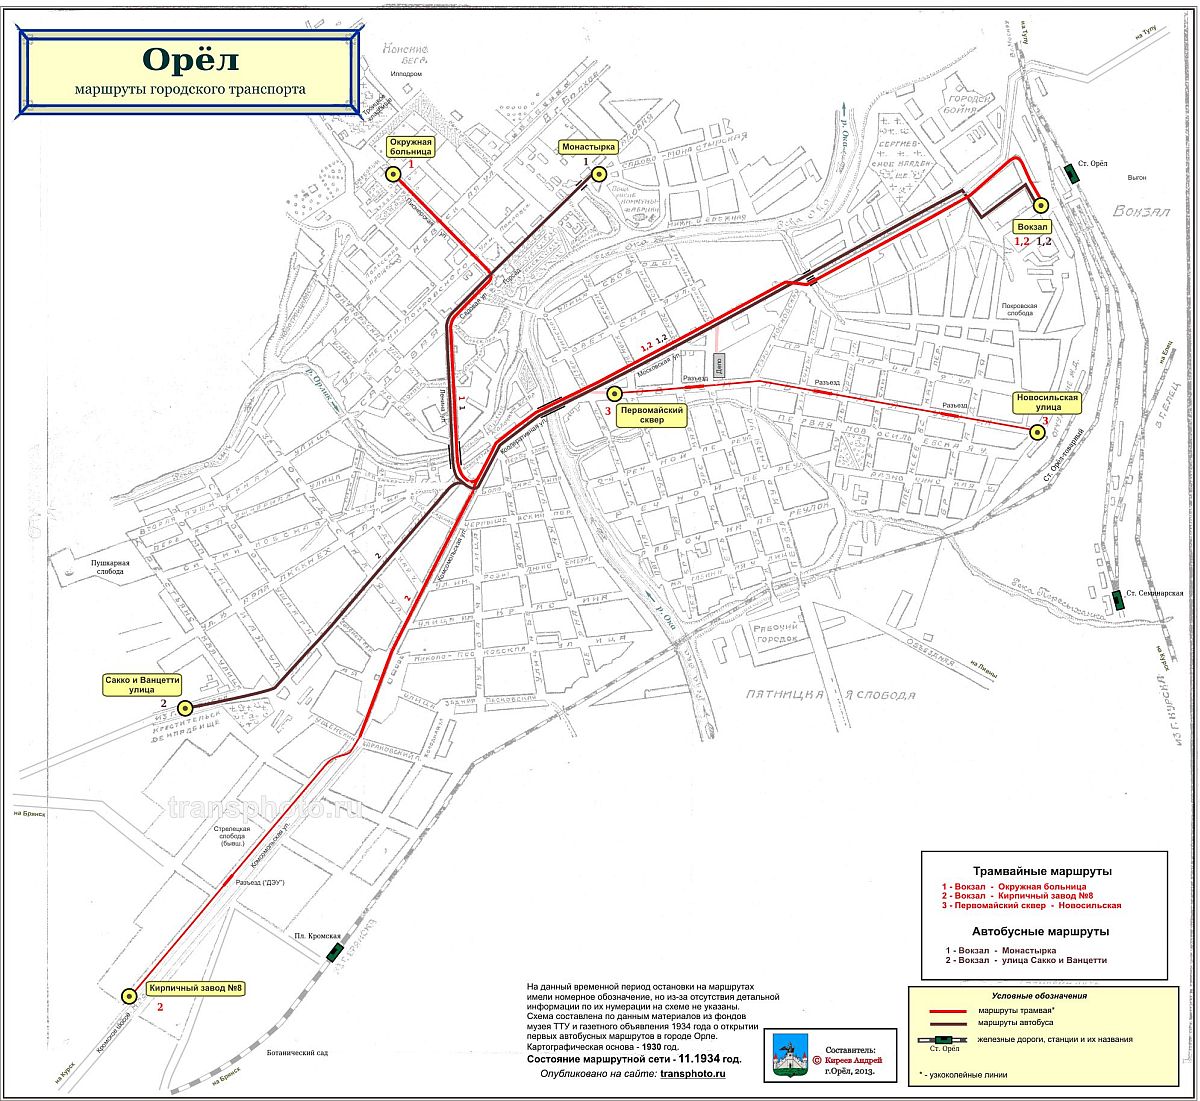 map of oryol